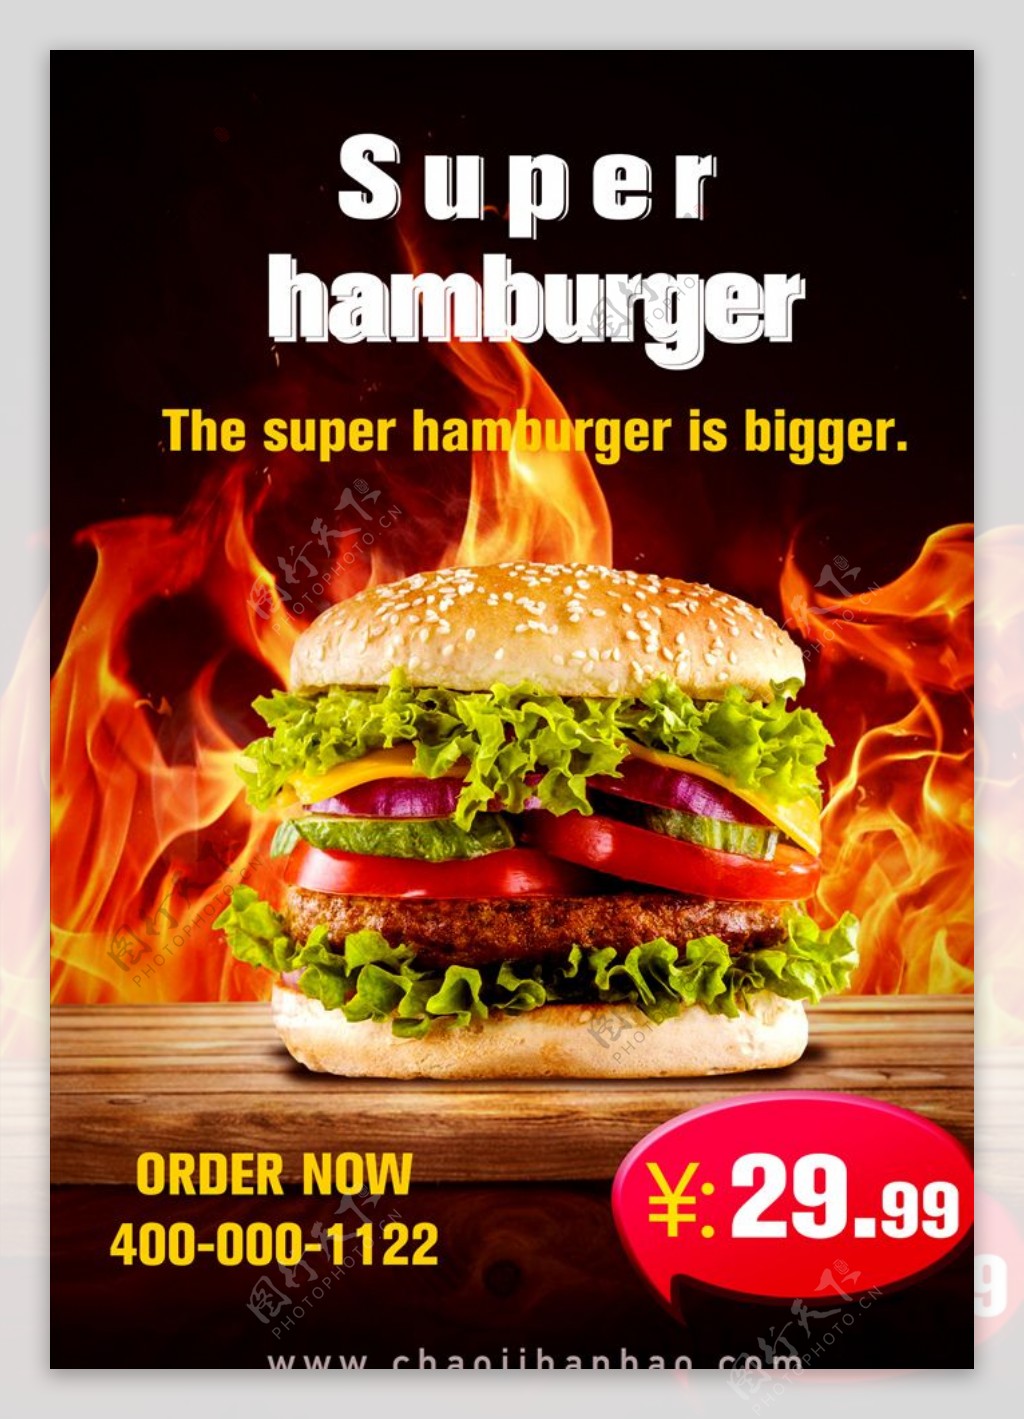 汉堡促销海报